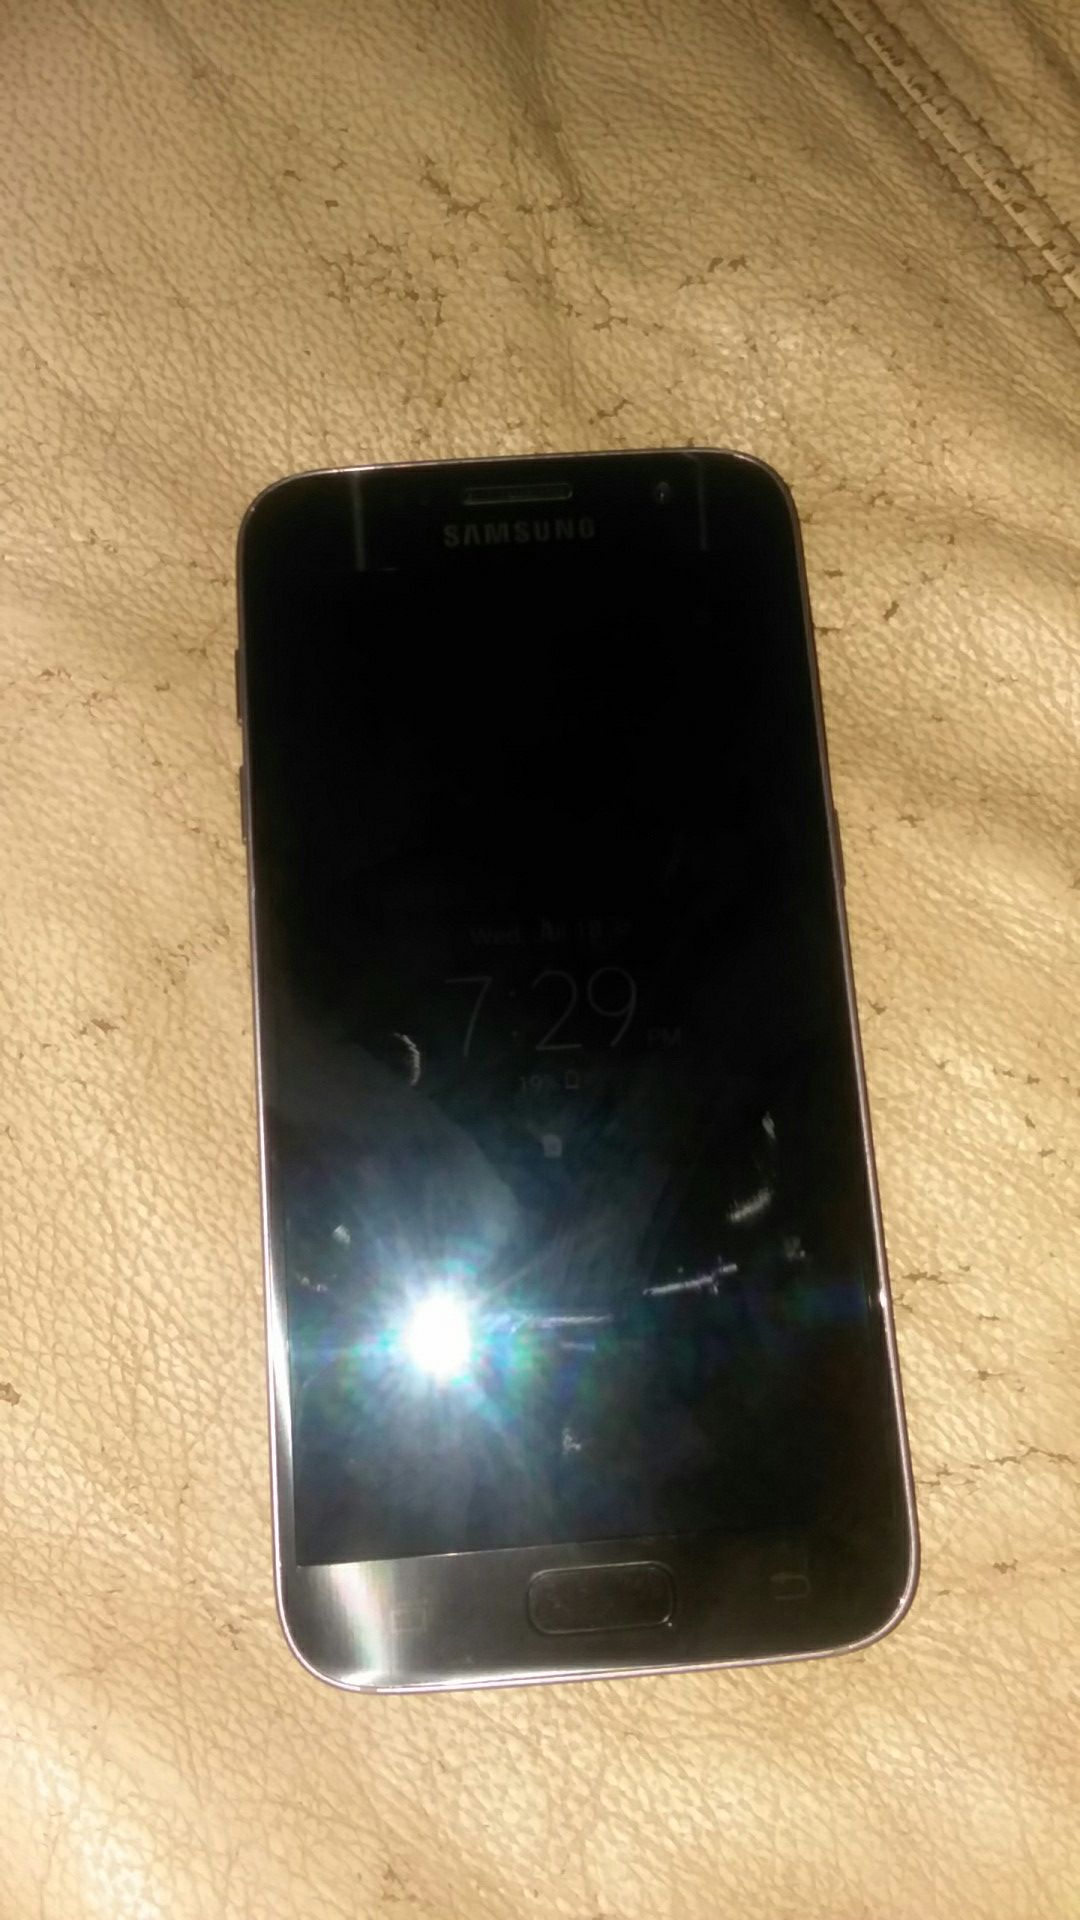 Samsung galaxy s7 unlocked